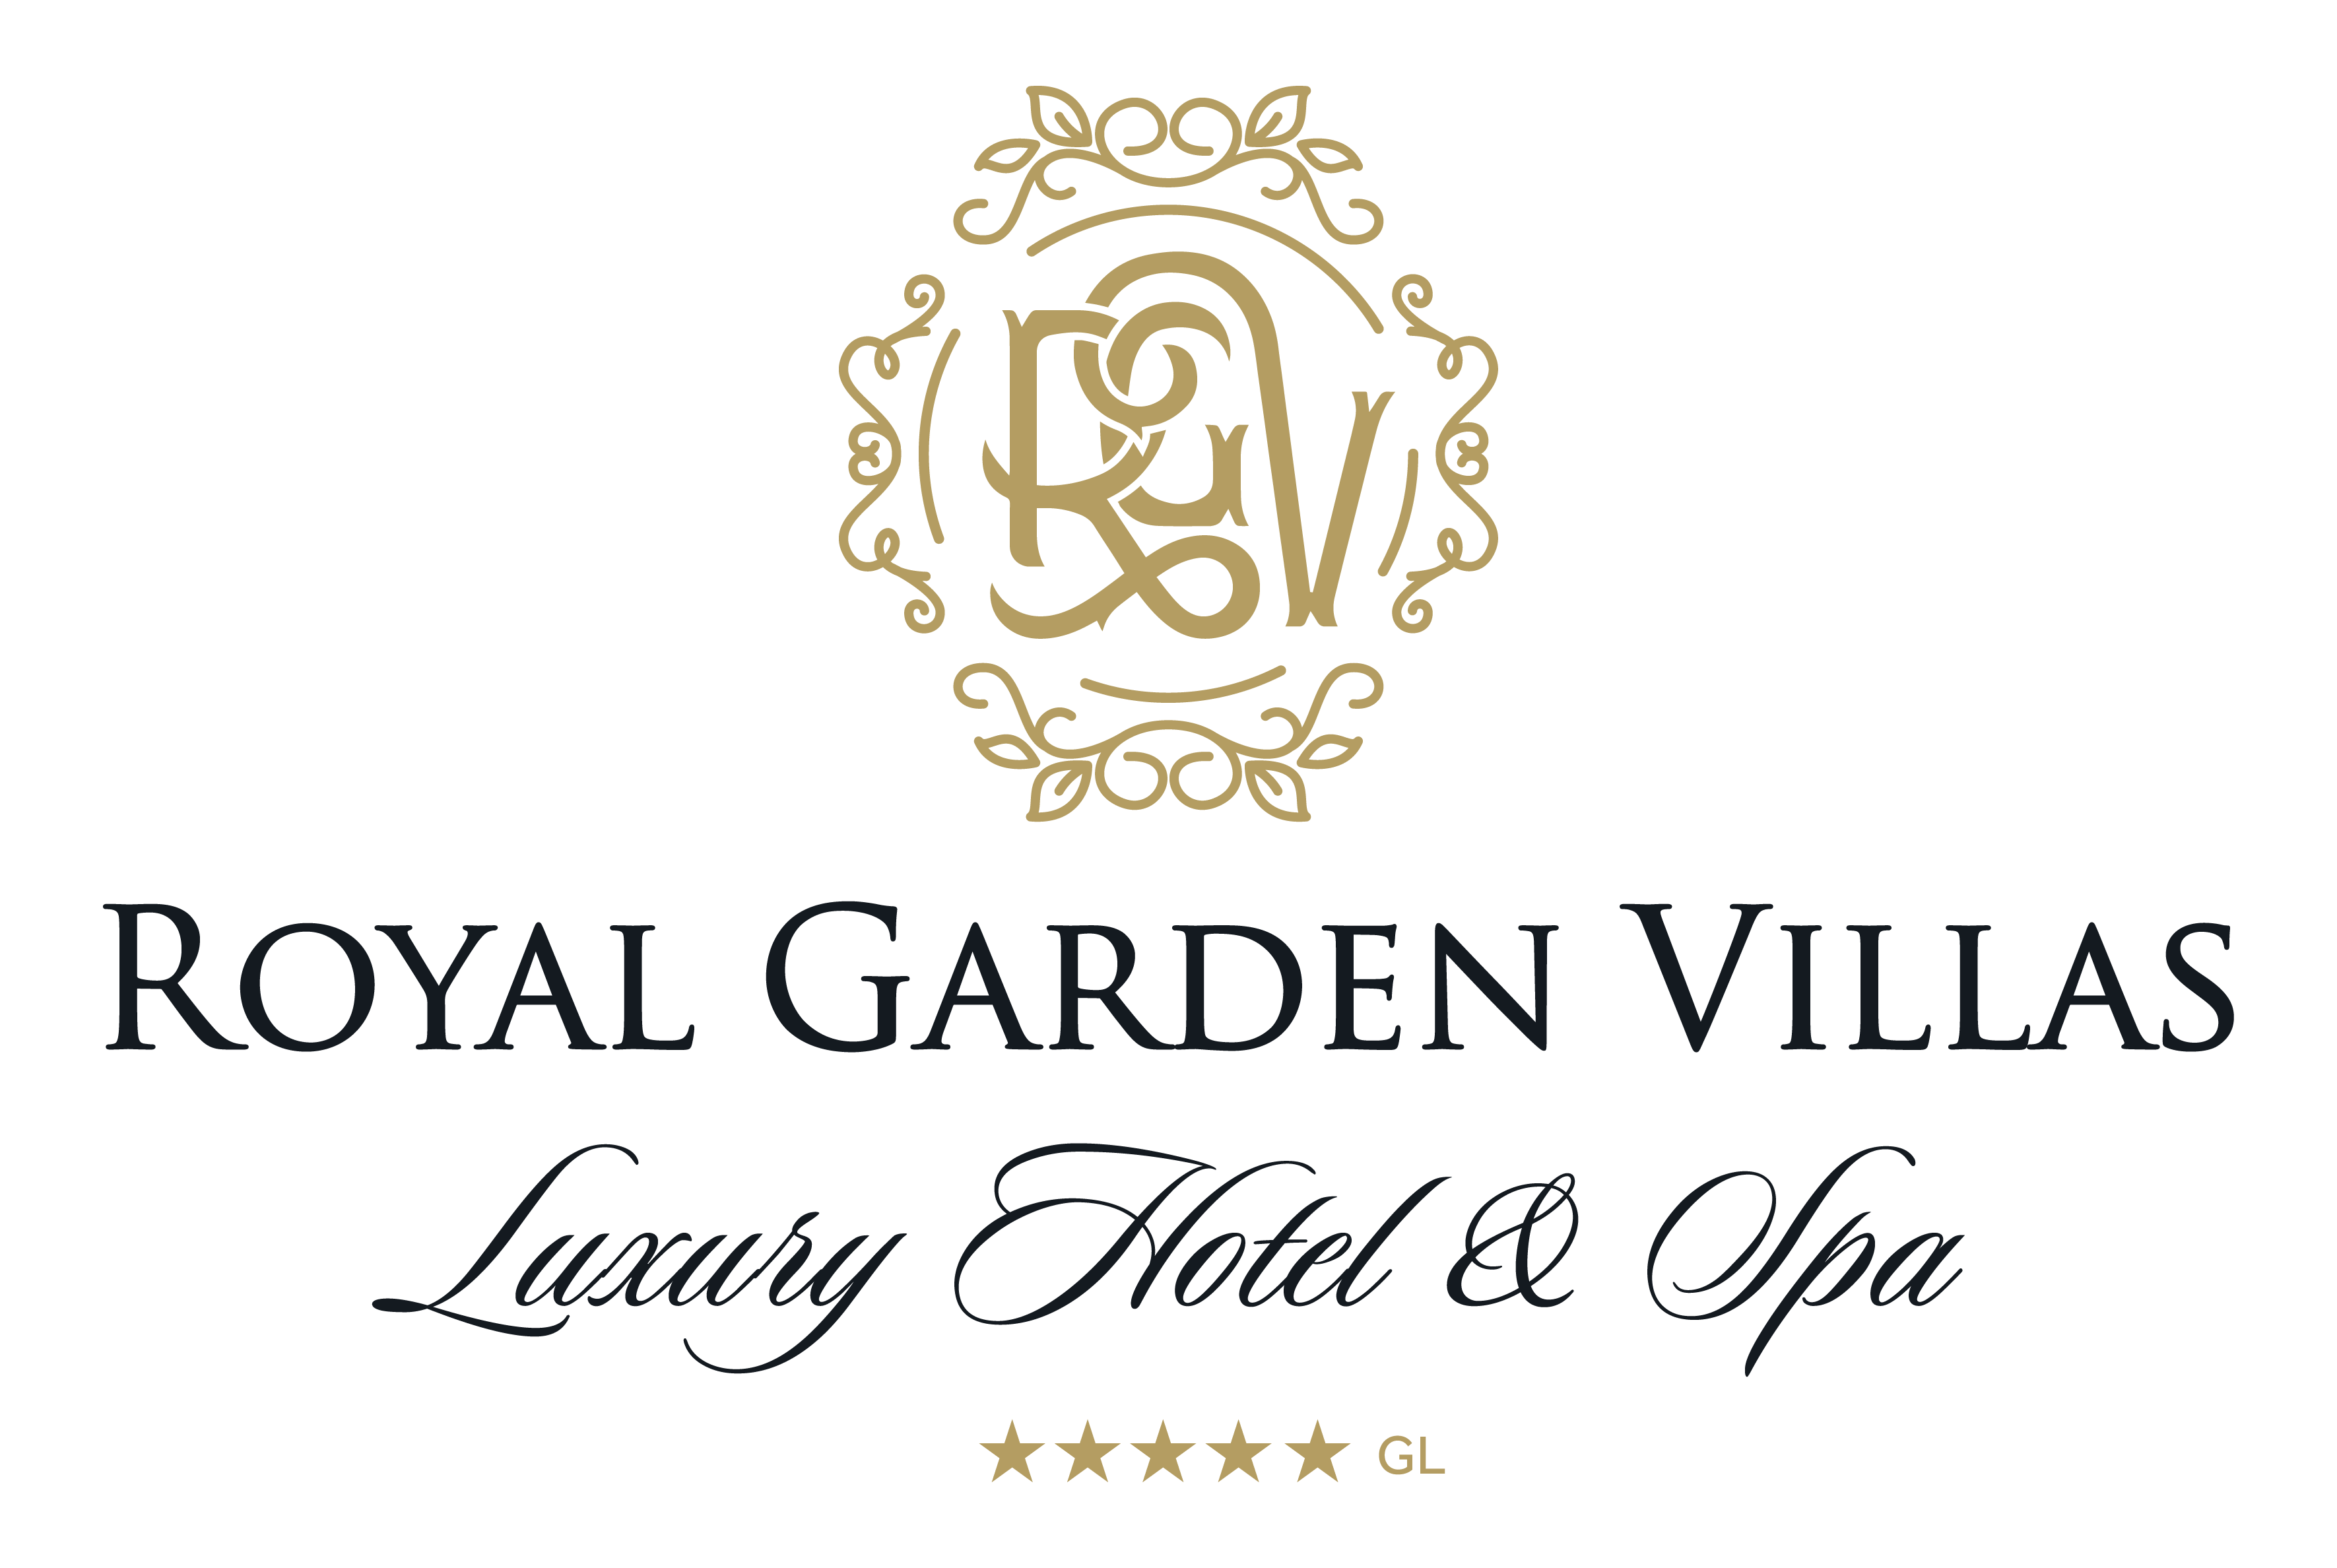 Royal Garden Villas